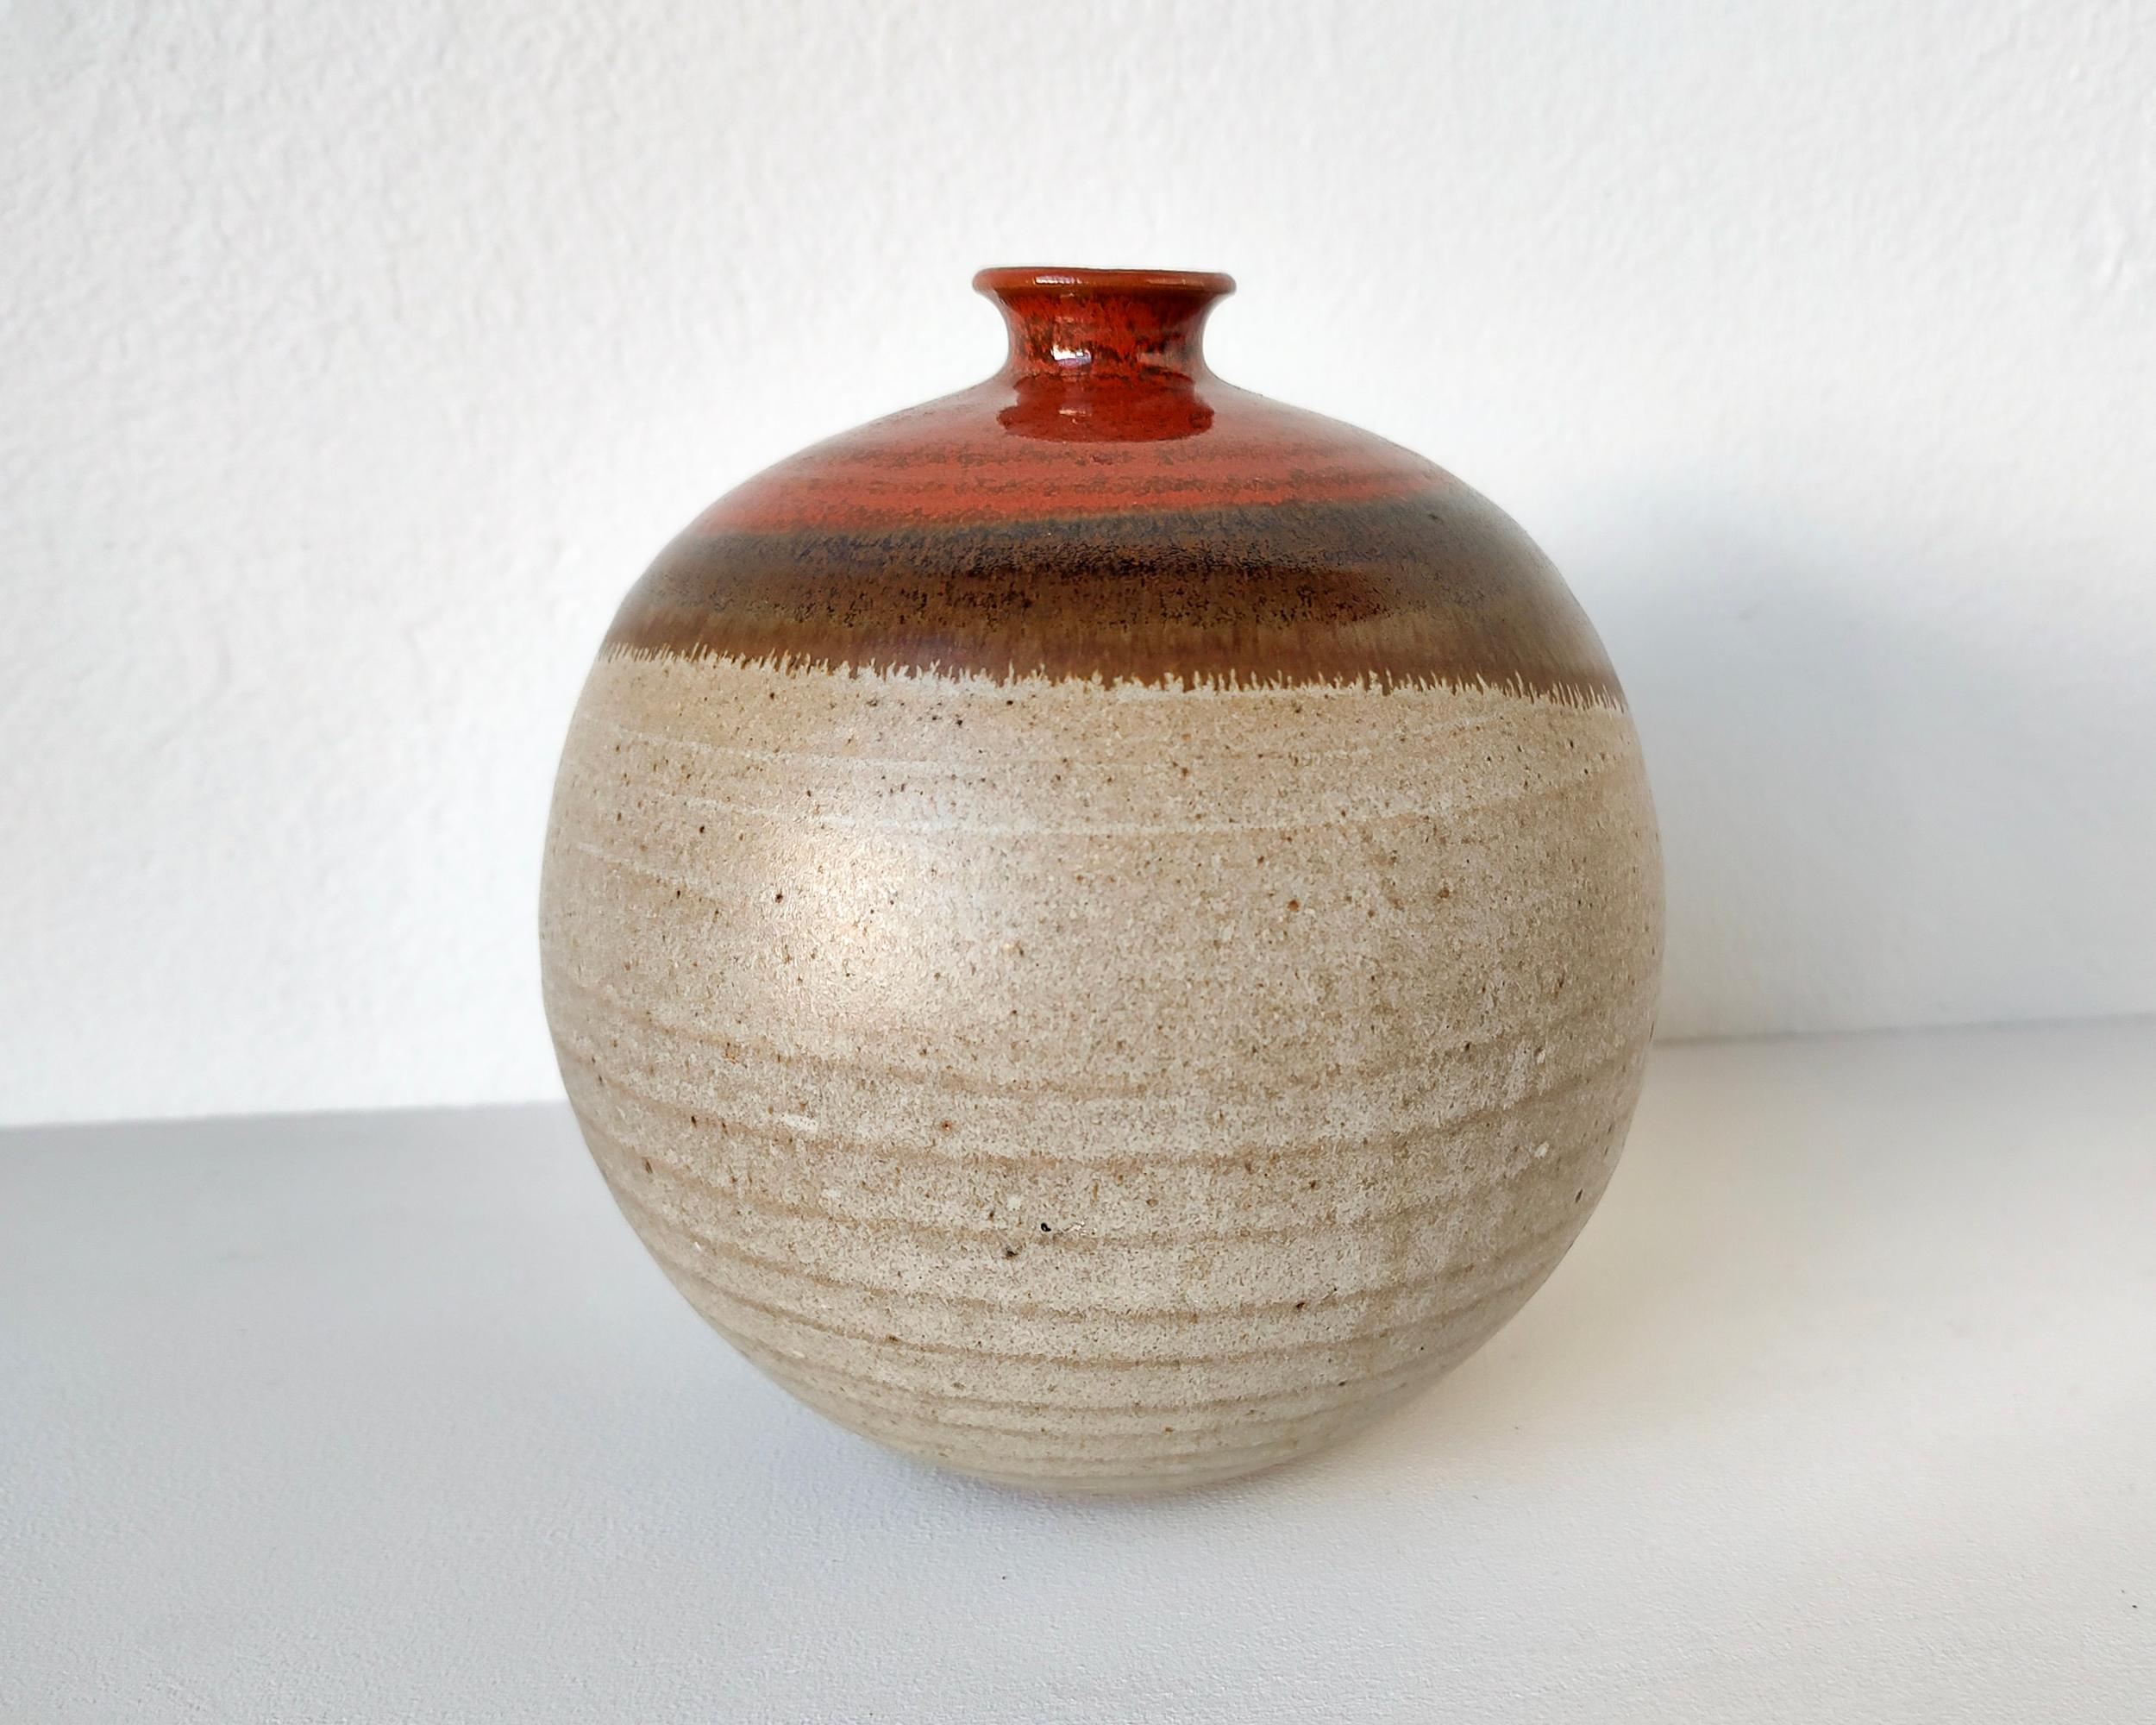 Kugelförmige Vase aus Steinzeug mit schmalem Hals, radgedreht. Studio-Keramikgefäß mit sichtbaren Rändern und einem versteckten Fuß. Rote Eisenglasur auf mattweißer Glasur überlagert sich zu einem überlappenden Glasurmuster.